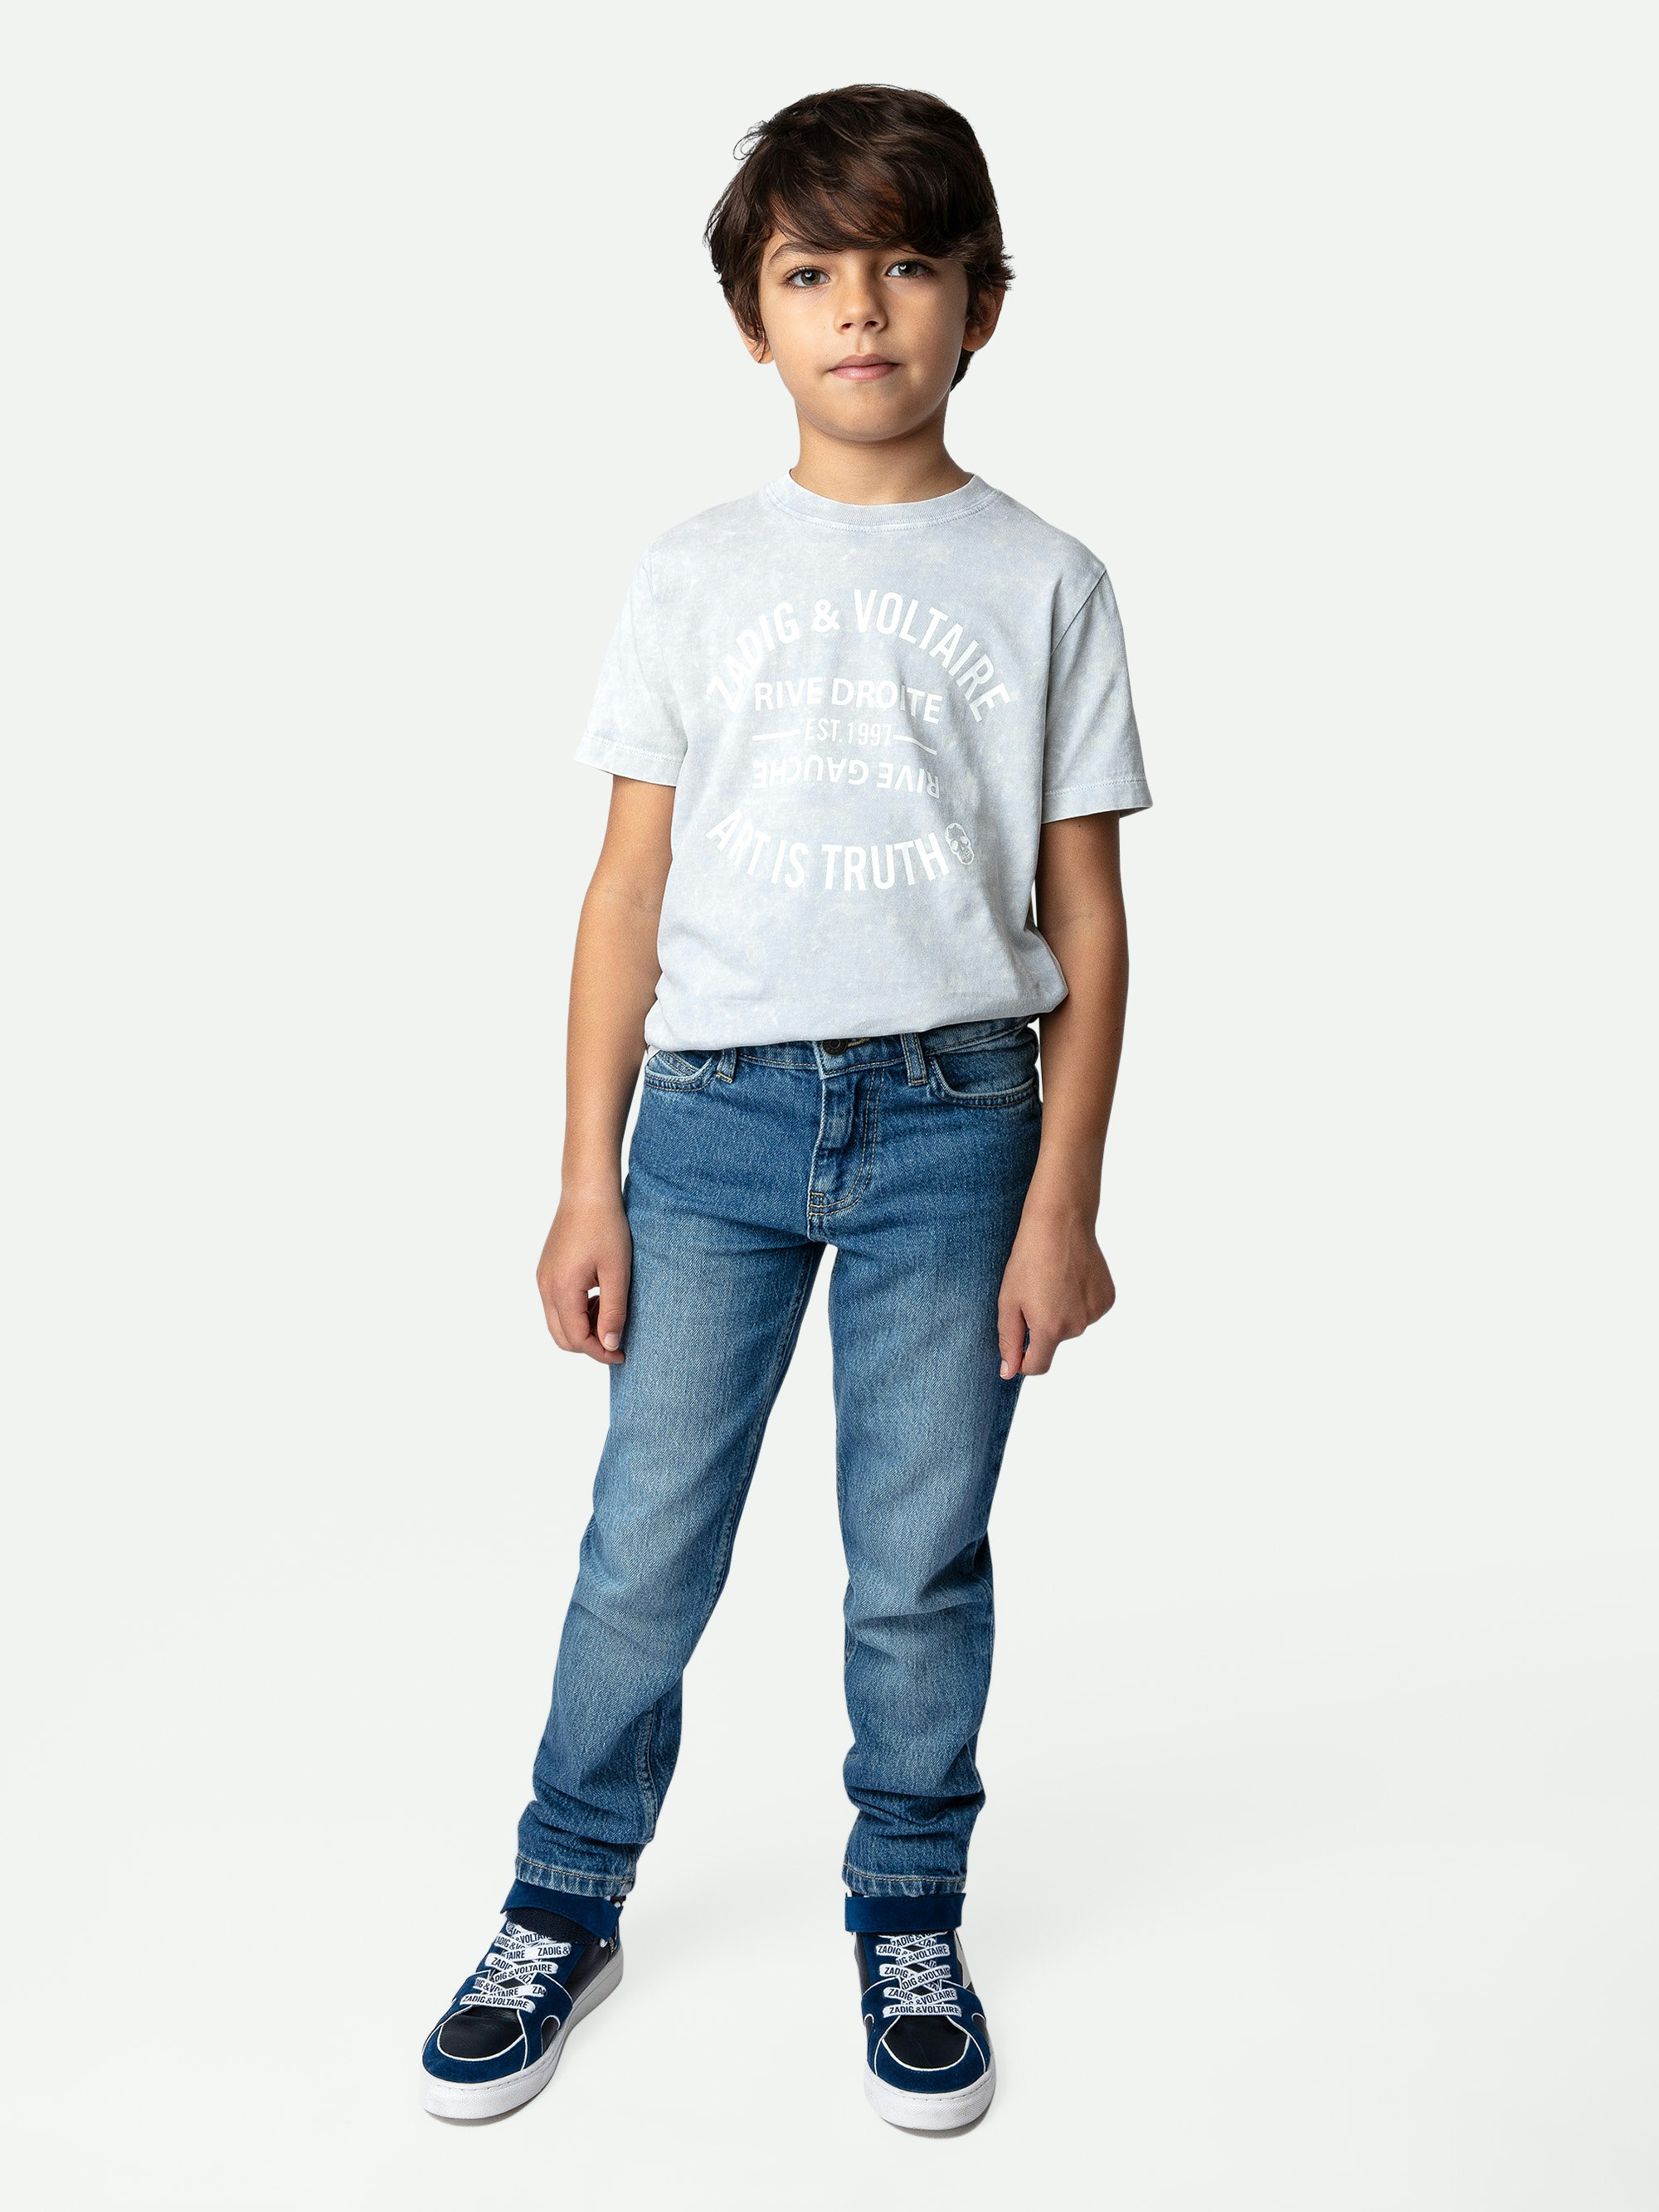 T-shirt Kita Ragazzo - T-shirt da ragazzo a maniche corte in jersey di cotone grigia effetto neve decorata con stemma.